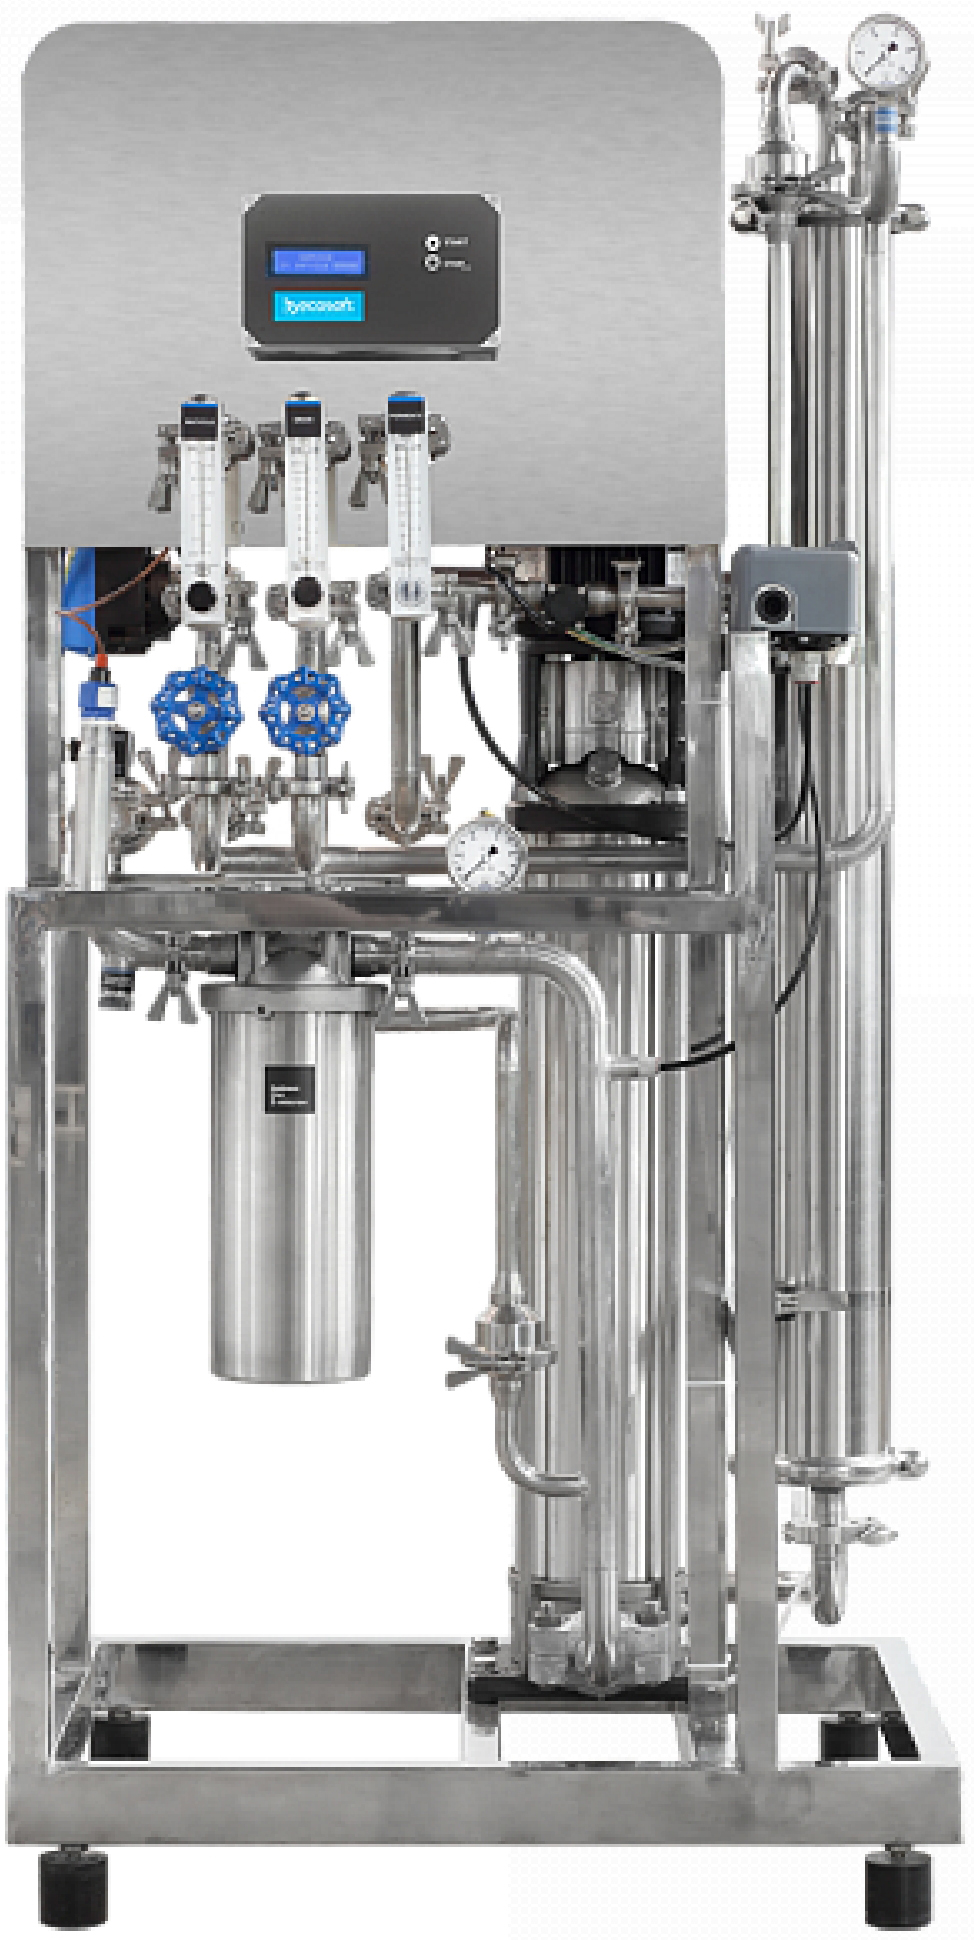 Коммерческая система очистки воды Ecosoft МО6500BWSS